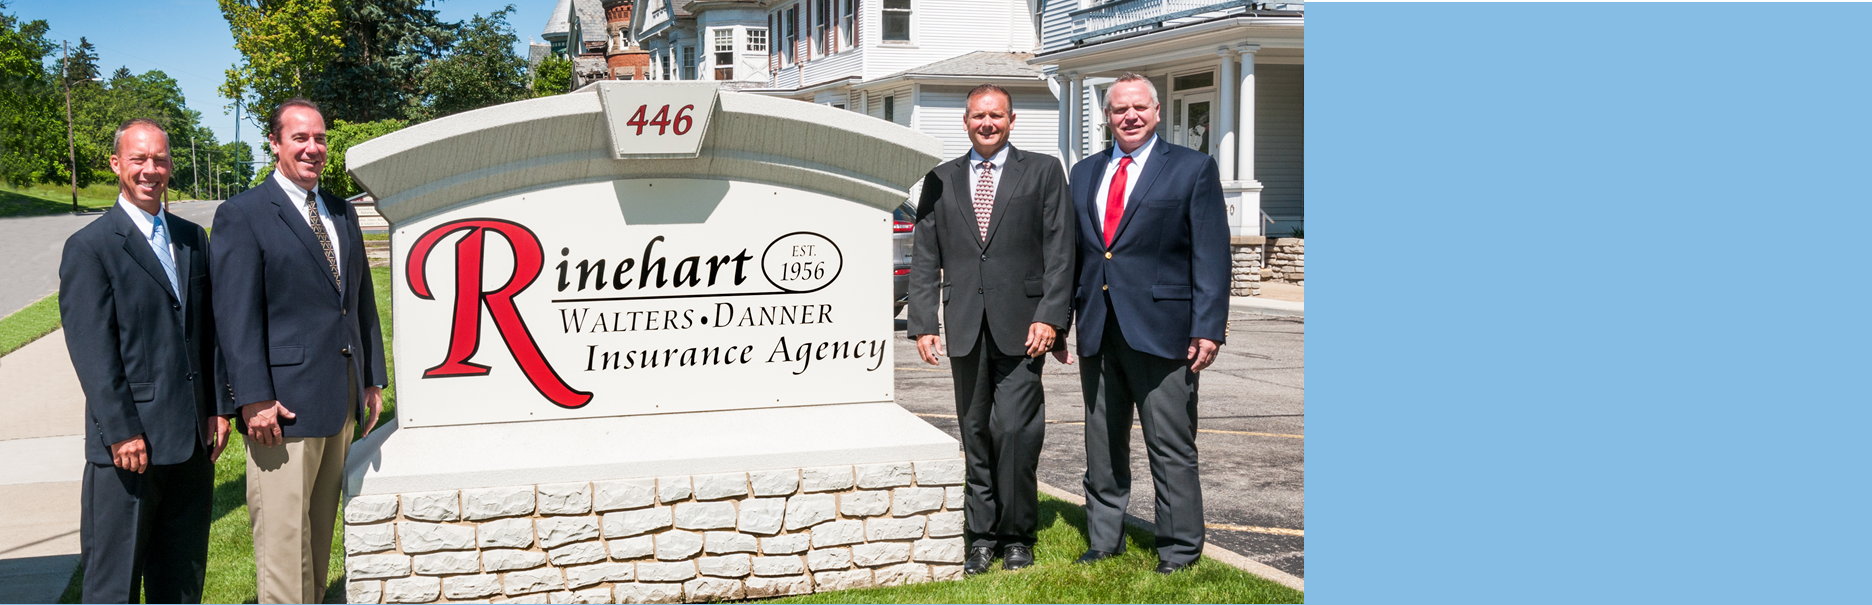 Rinehart Insurance - Owners